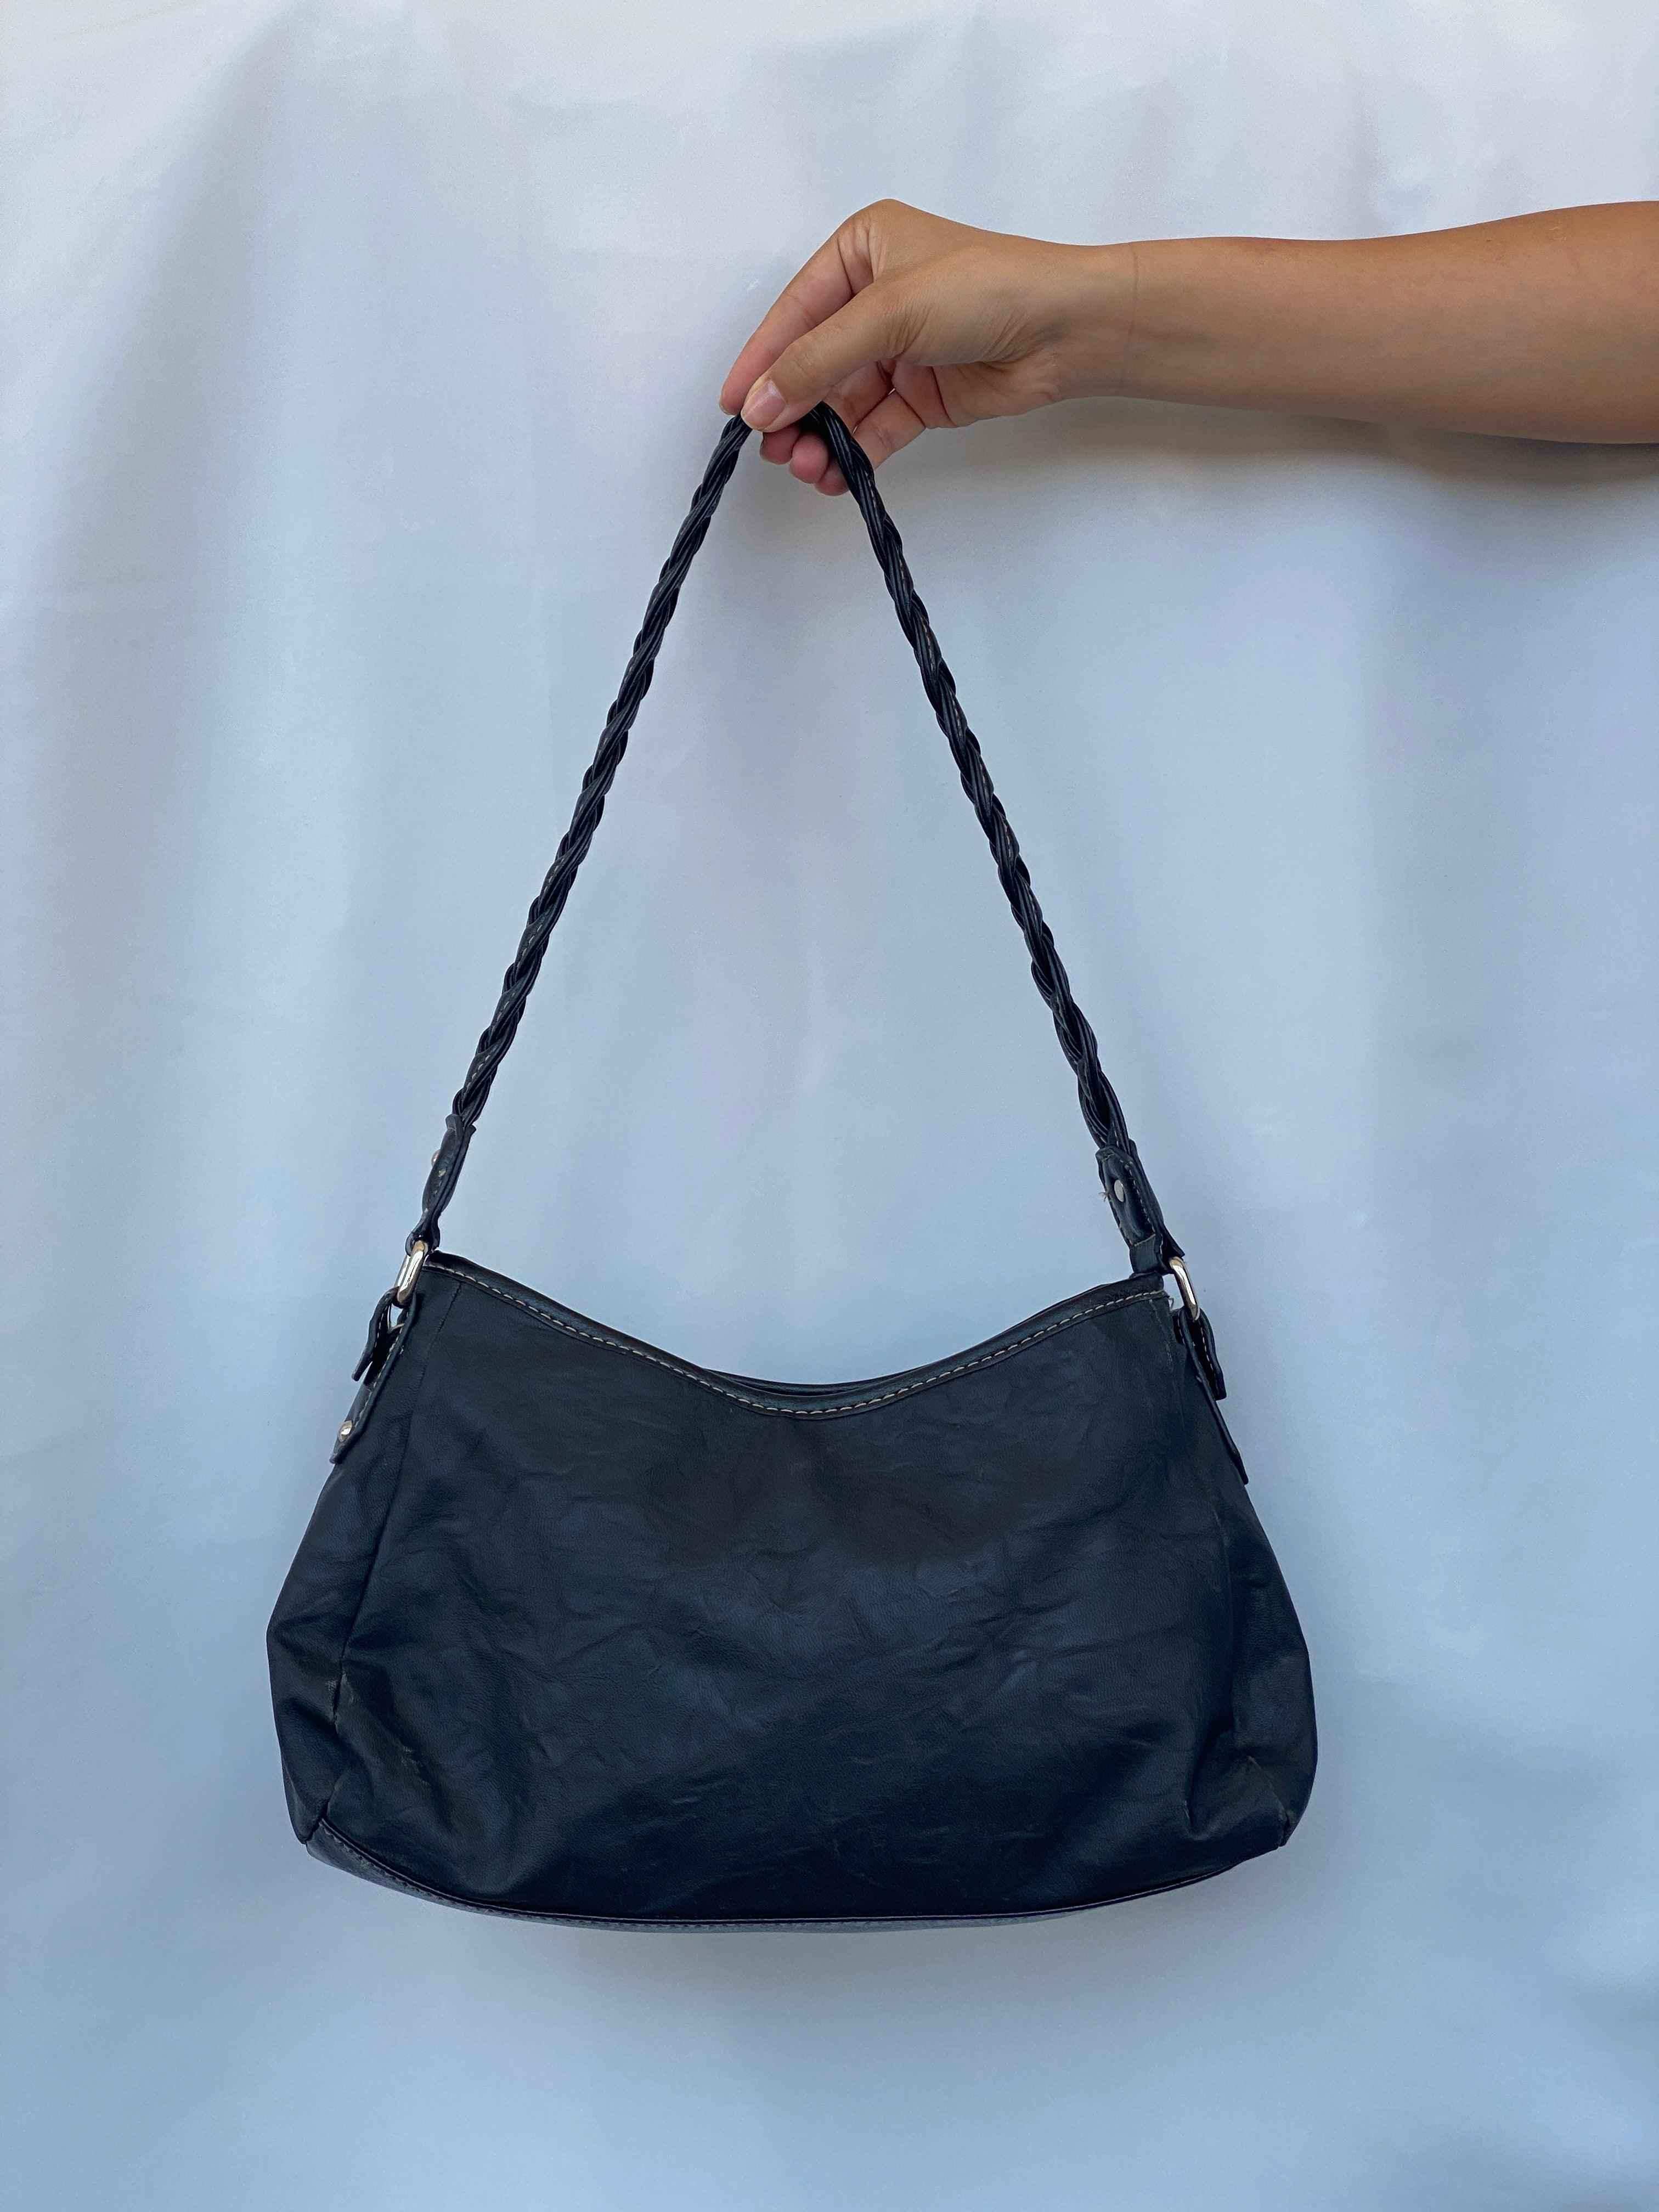 Rosetti Blue Bags & Handbags for Women for sale | eBay